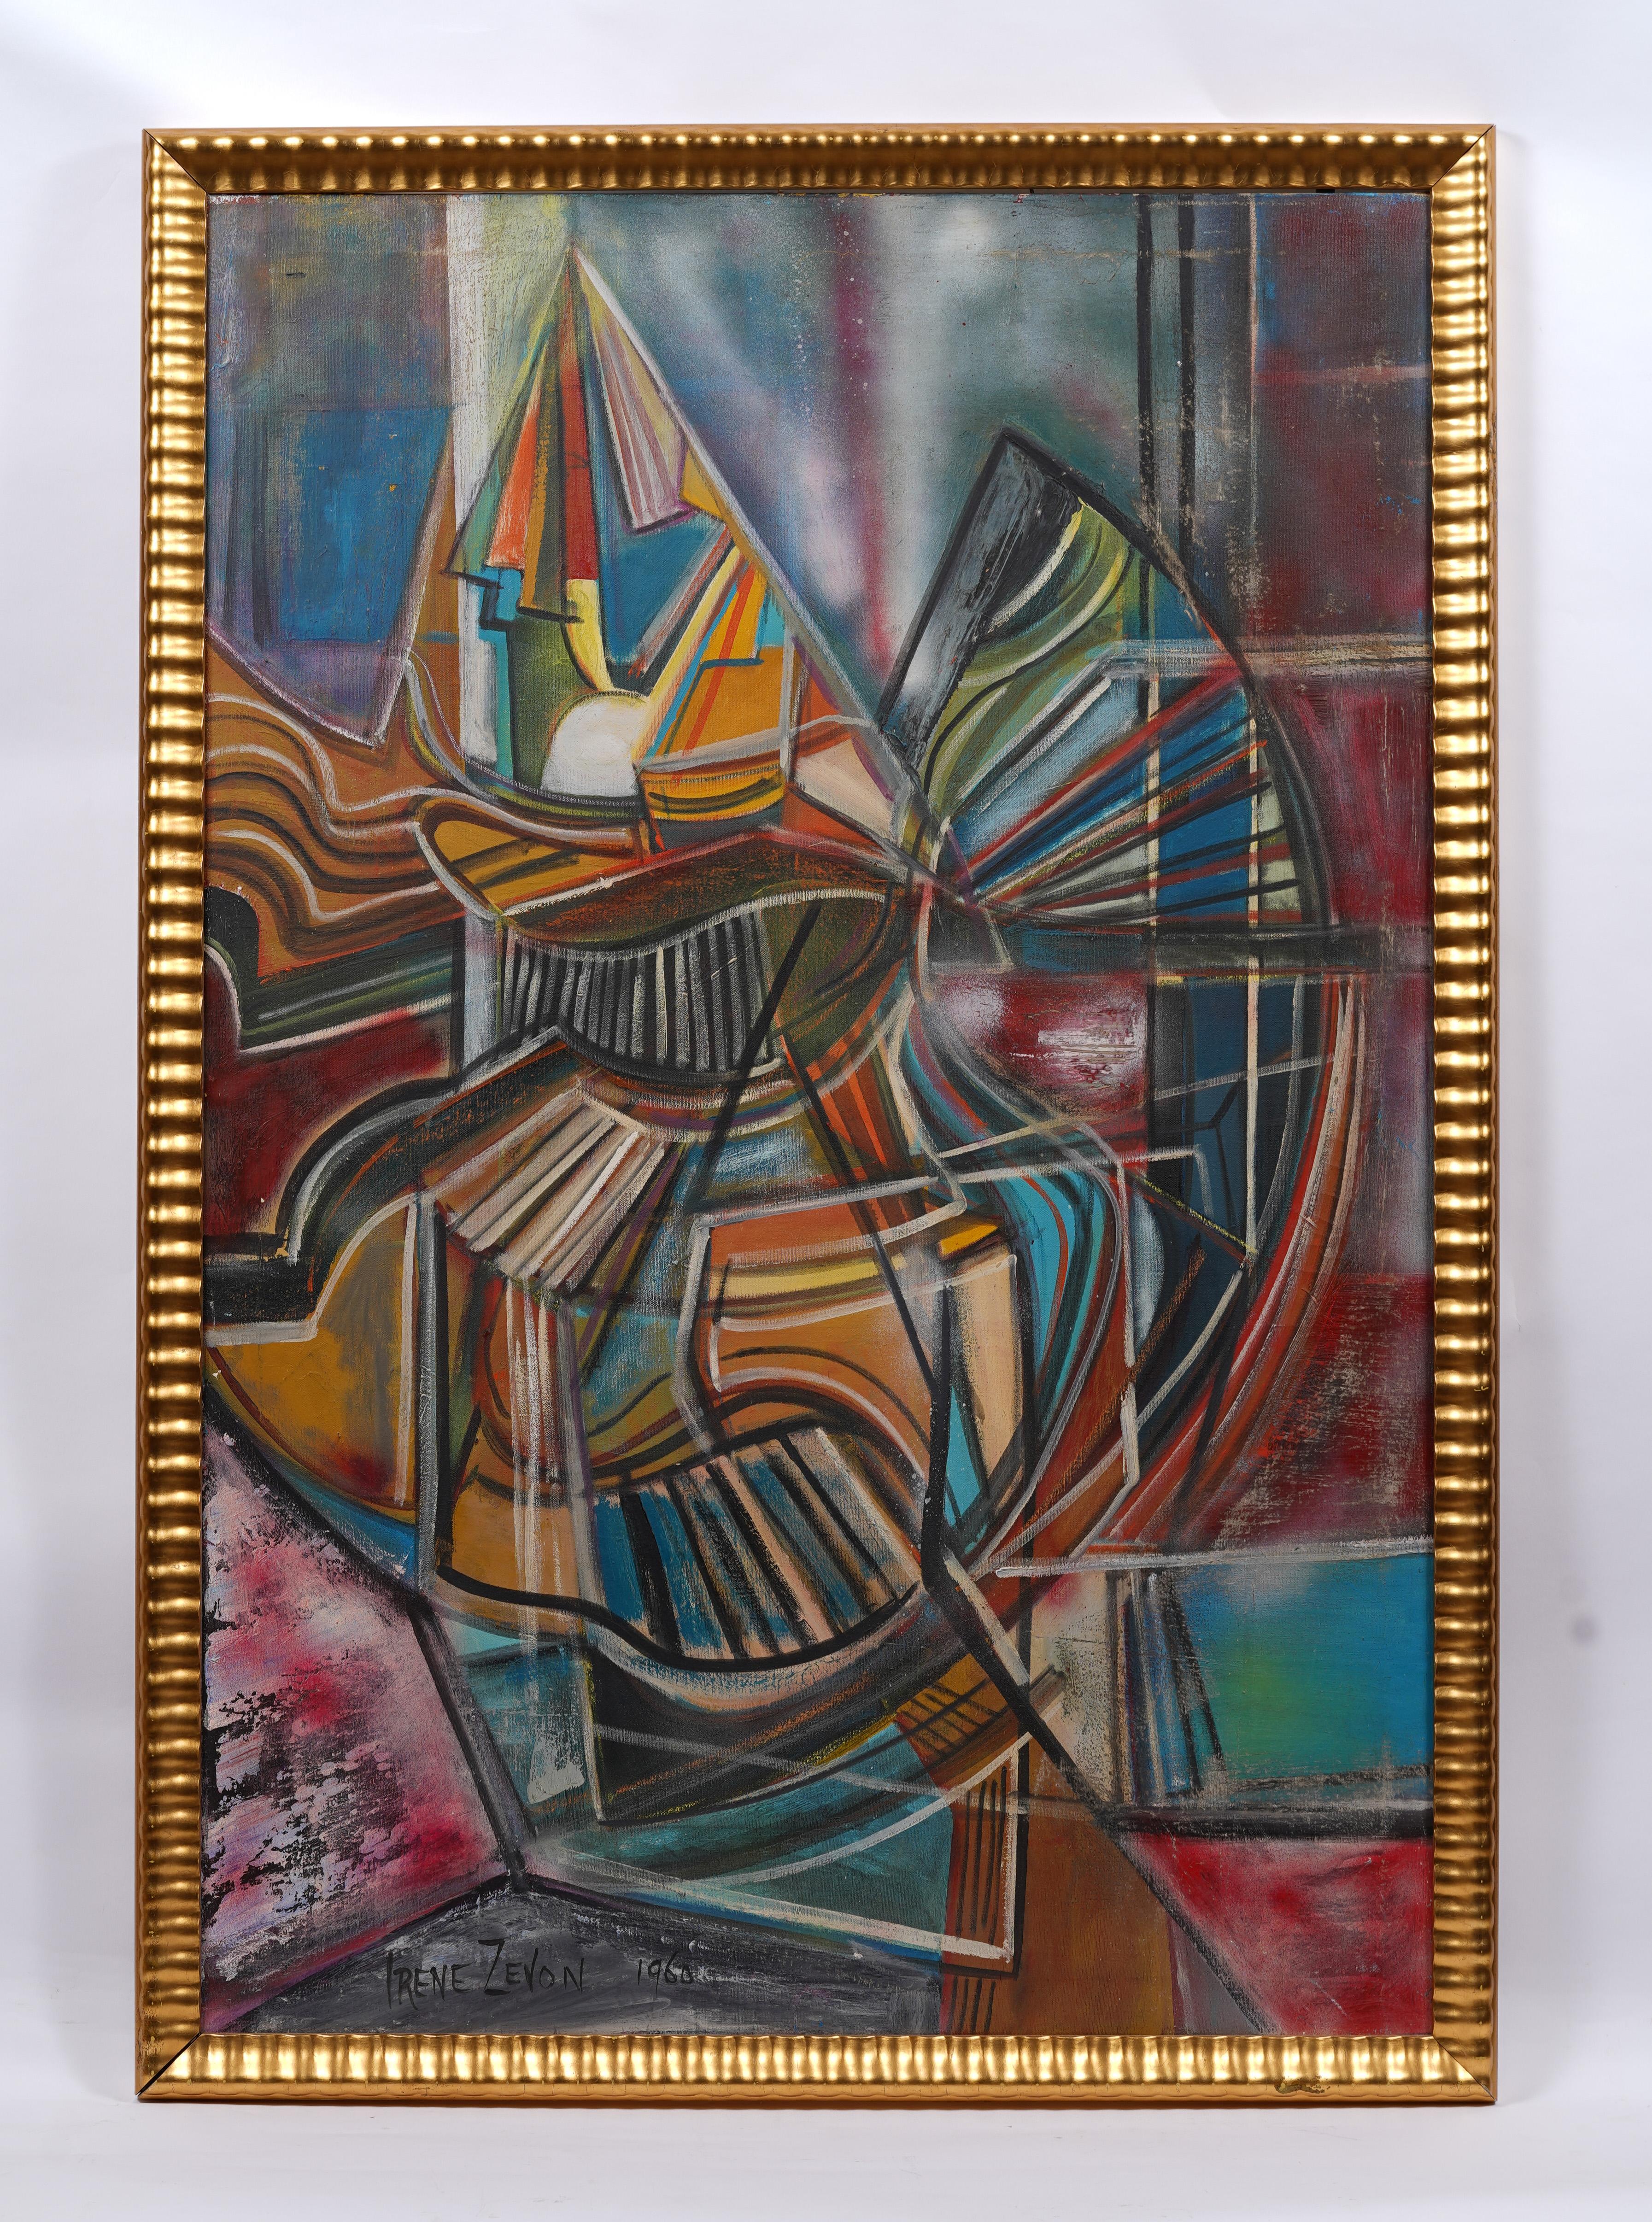 Ancienne peinture à l'huile abstraite expressionniste abstraite américaine féminine moderniste encadrée - Abstrait Painting par Irene Zevon